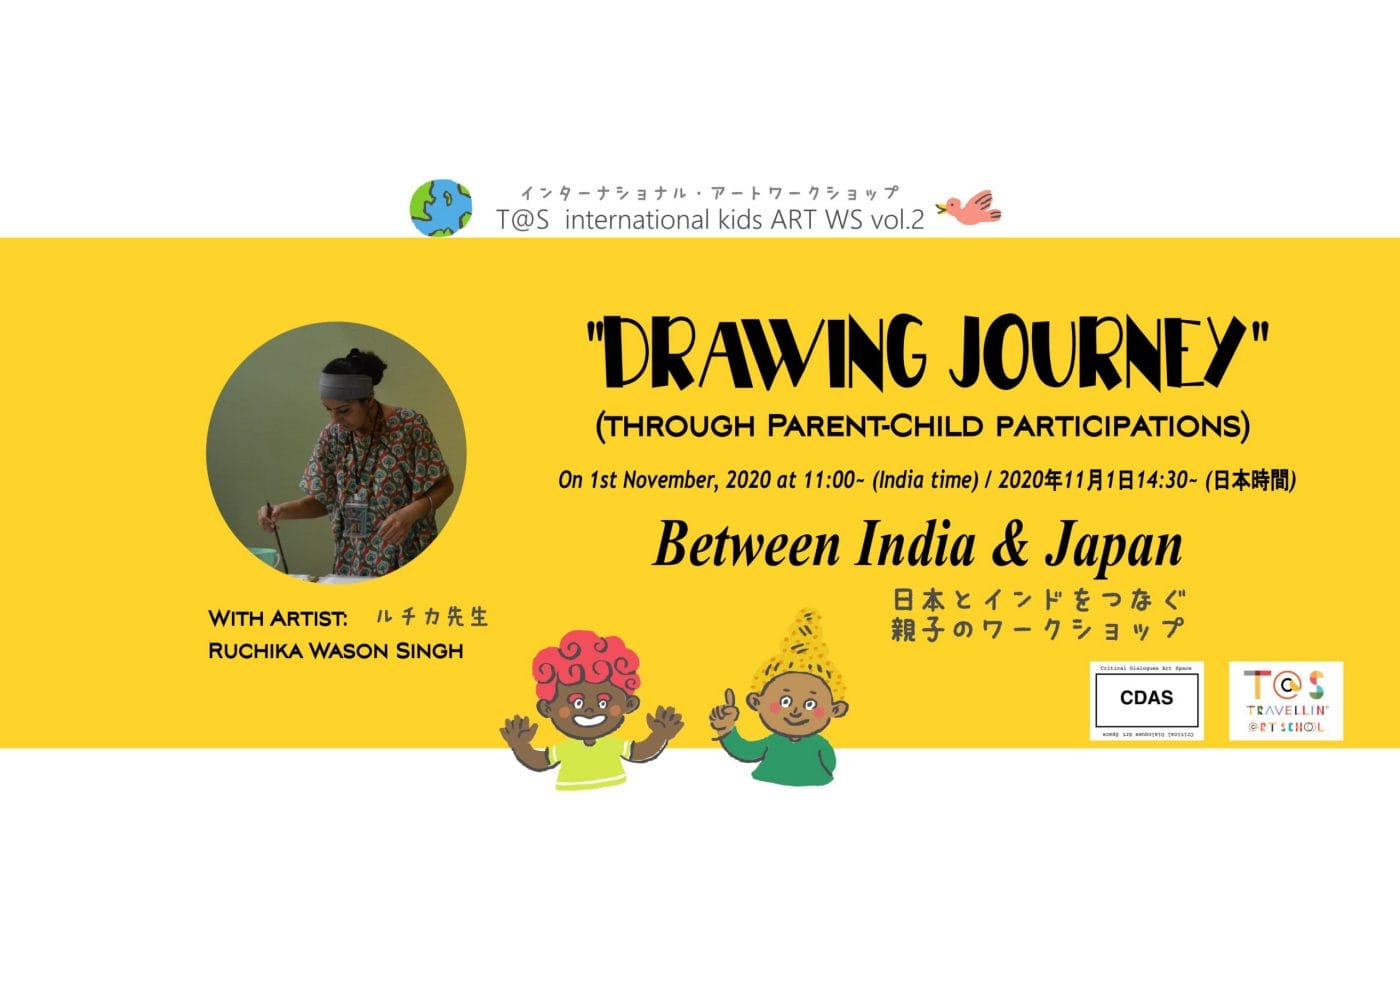 「旅」をテーマに海外と日本の子どもたちをつなぐオンラインワークショップ「Travellin’ @rt School」、第2回はインド人アーティストと絵本を制作。